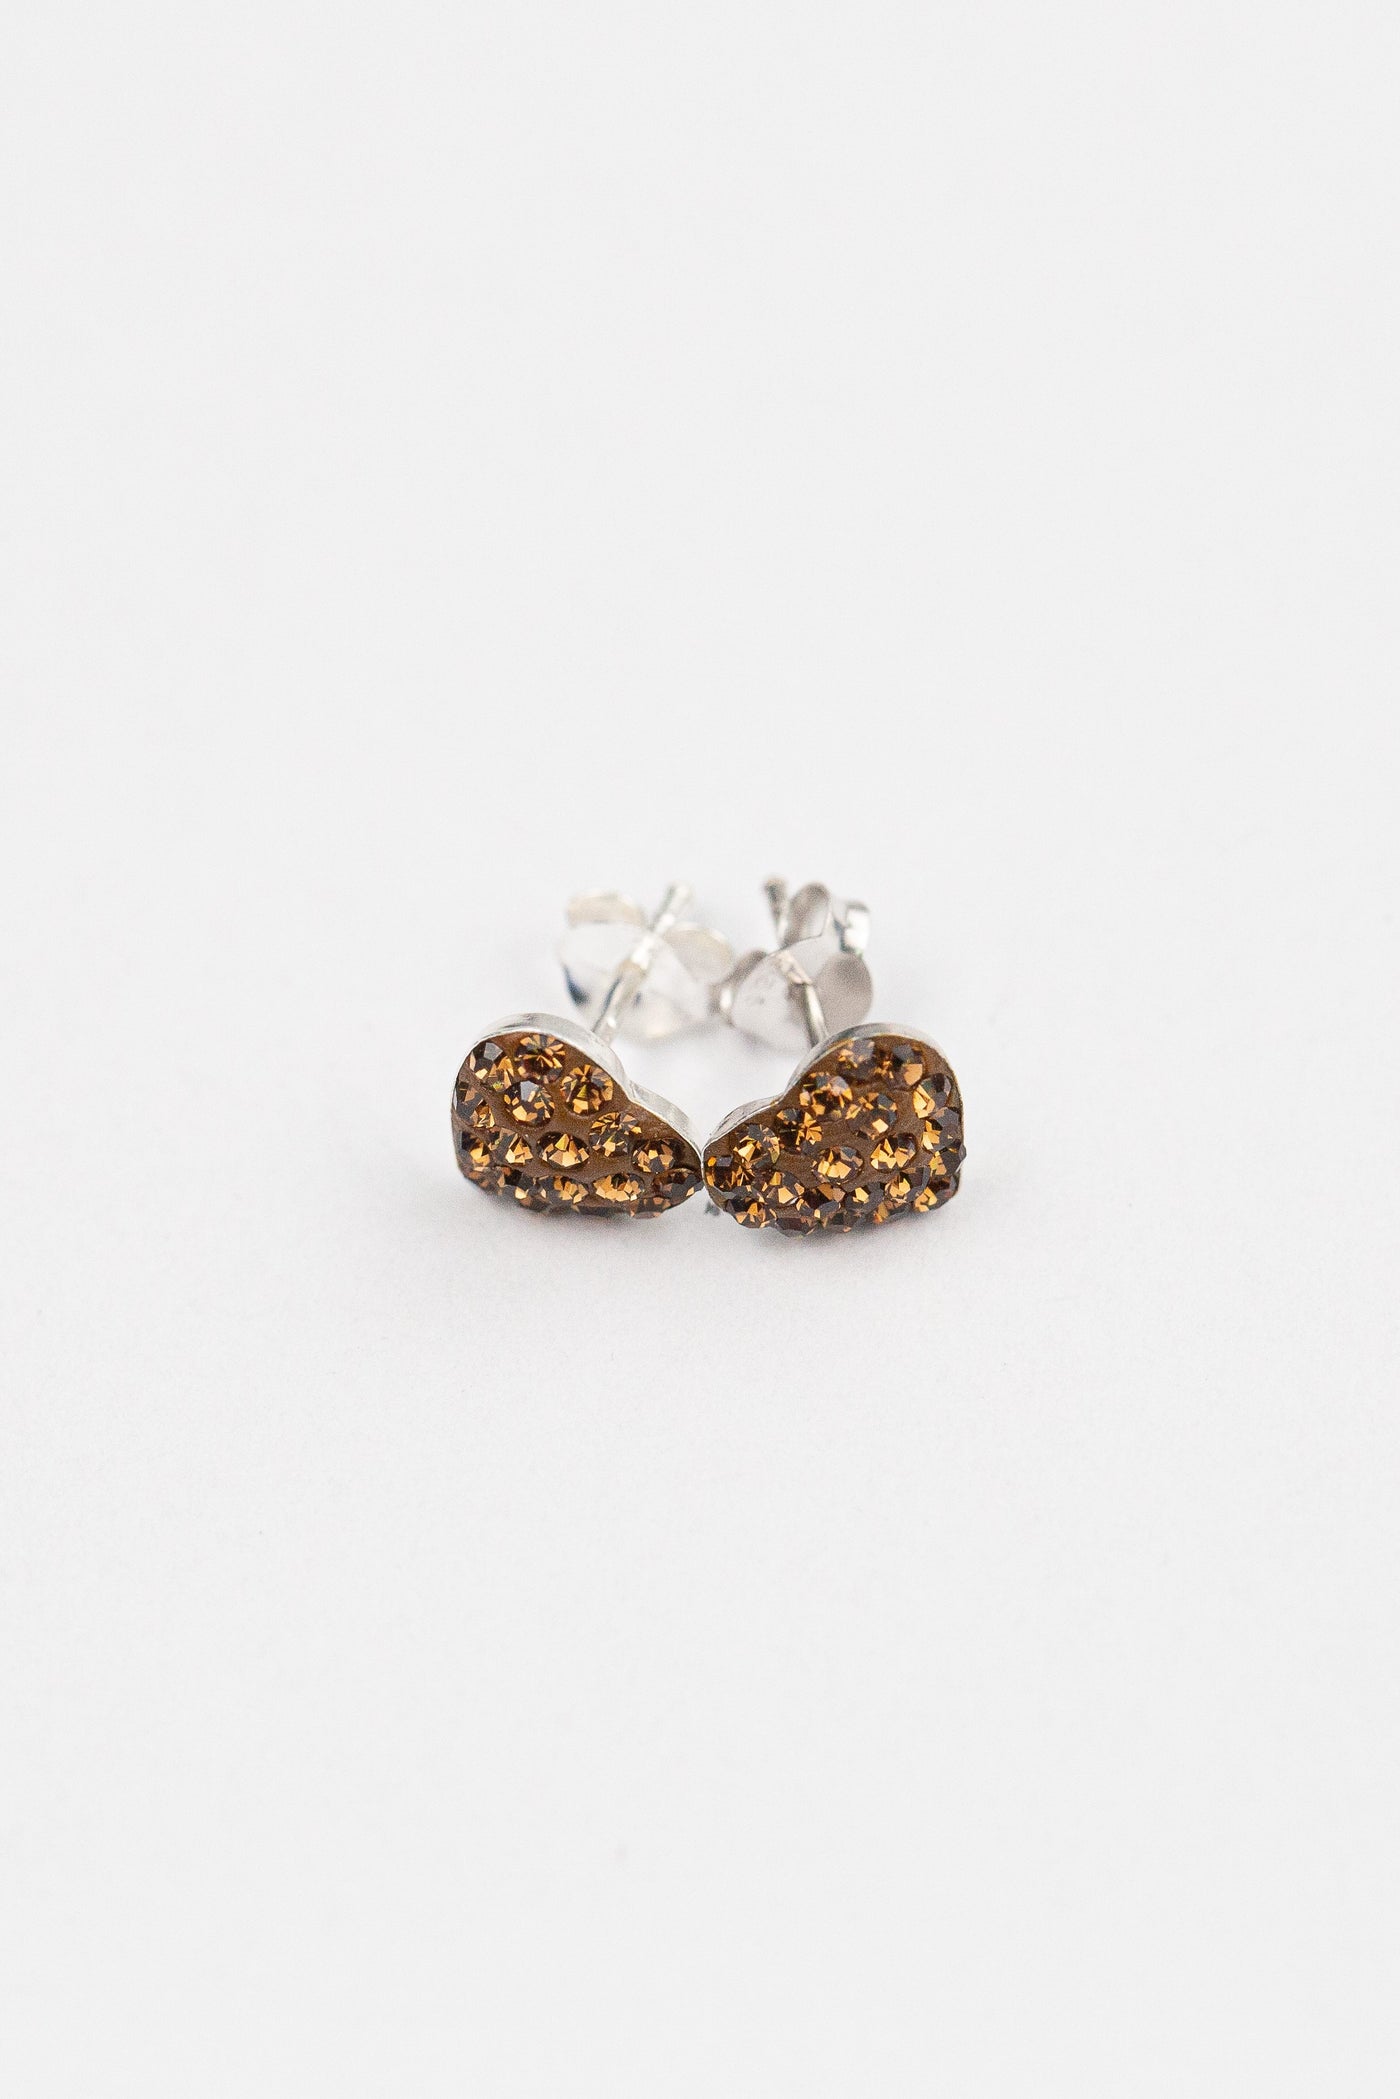 Heart Pave Crystal Silver Stud Earrings in Smokey Topaz | Annie and Sisters | sister stud earrings, for kids, children's jewelry, kid's jewelry, best friend